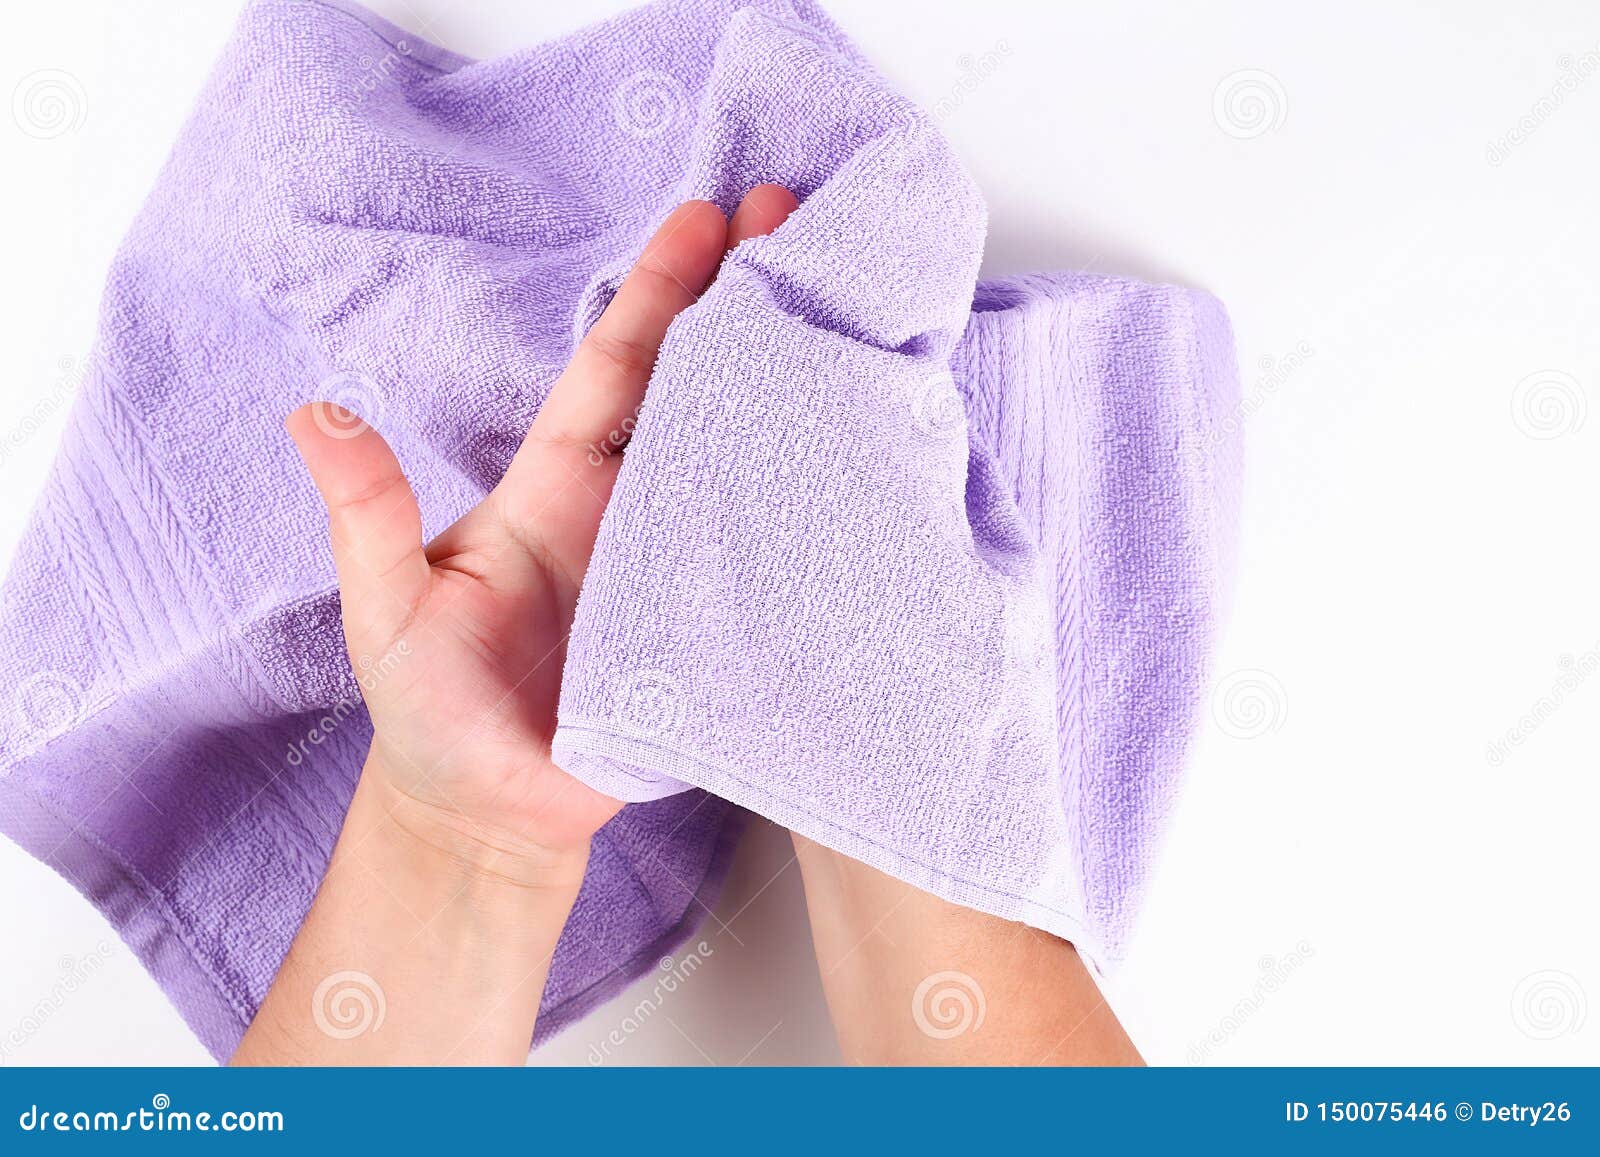 Полотенцем разбор. Вытирание рук полотенцем. Полотенце для рук. Полотенце для вытерание рук. Сухие полотенца для рук.